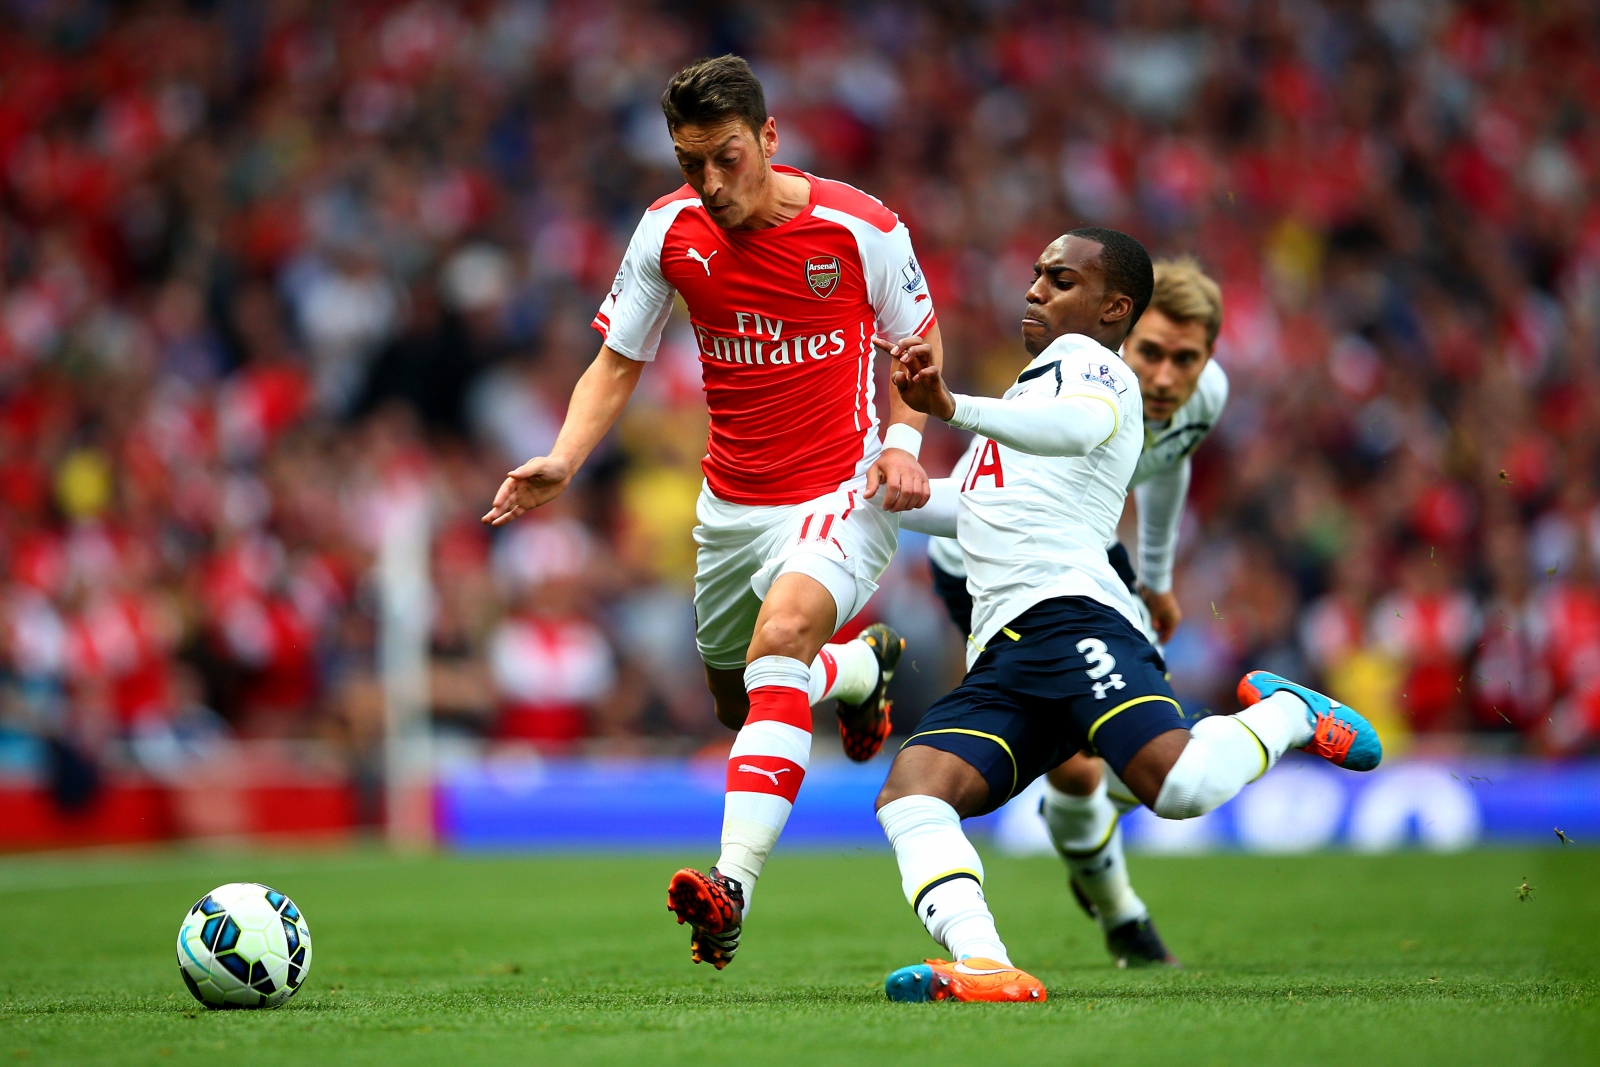 Barclays Premier League Latest Scores and Updates: Arsenal 1-1 Tottenham - LIVE